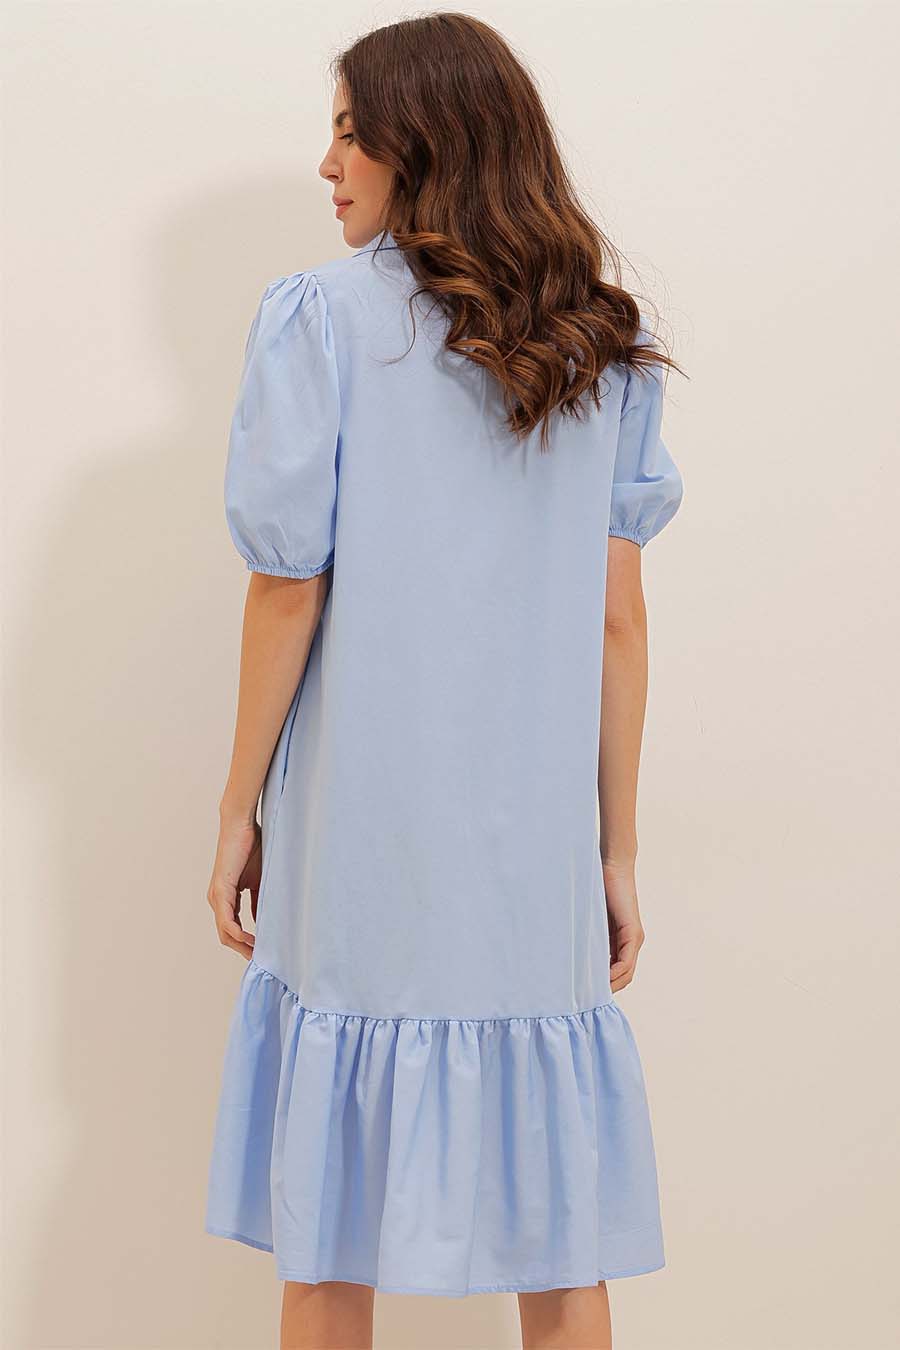 Γυναικείο φόρεμα Kiri, Γαλάζιο 7